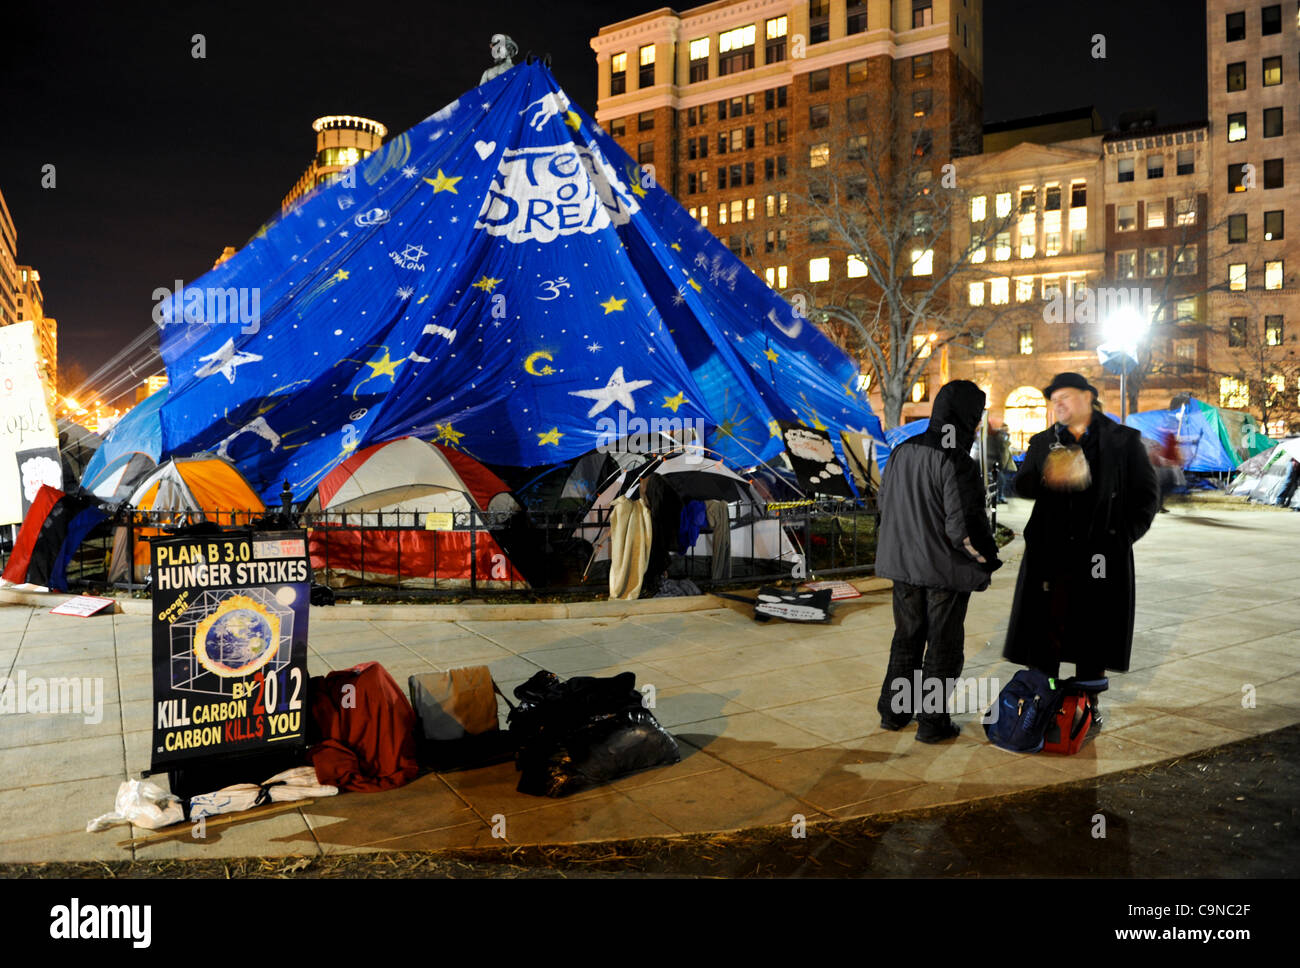 Jan 30,2012, occupent Washington DC, il y a encore beaucoup de tentes et des manifestants sur la place McPherson la nuit la ville avait dit à l'occupant pas plus de dormir ou en camping dans le parc. Banque D'Images